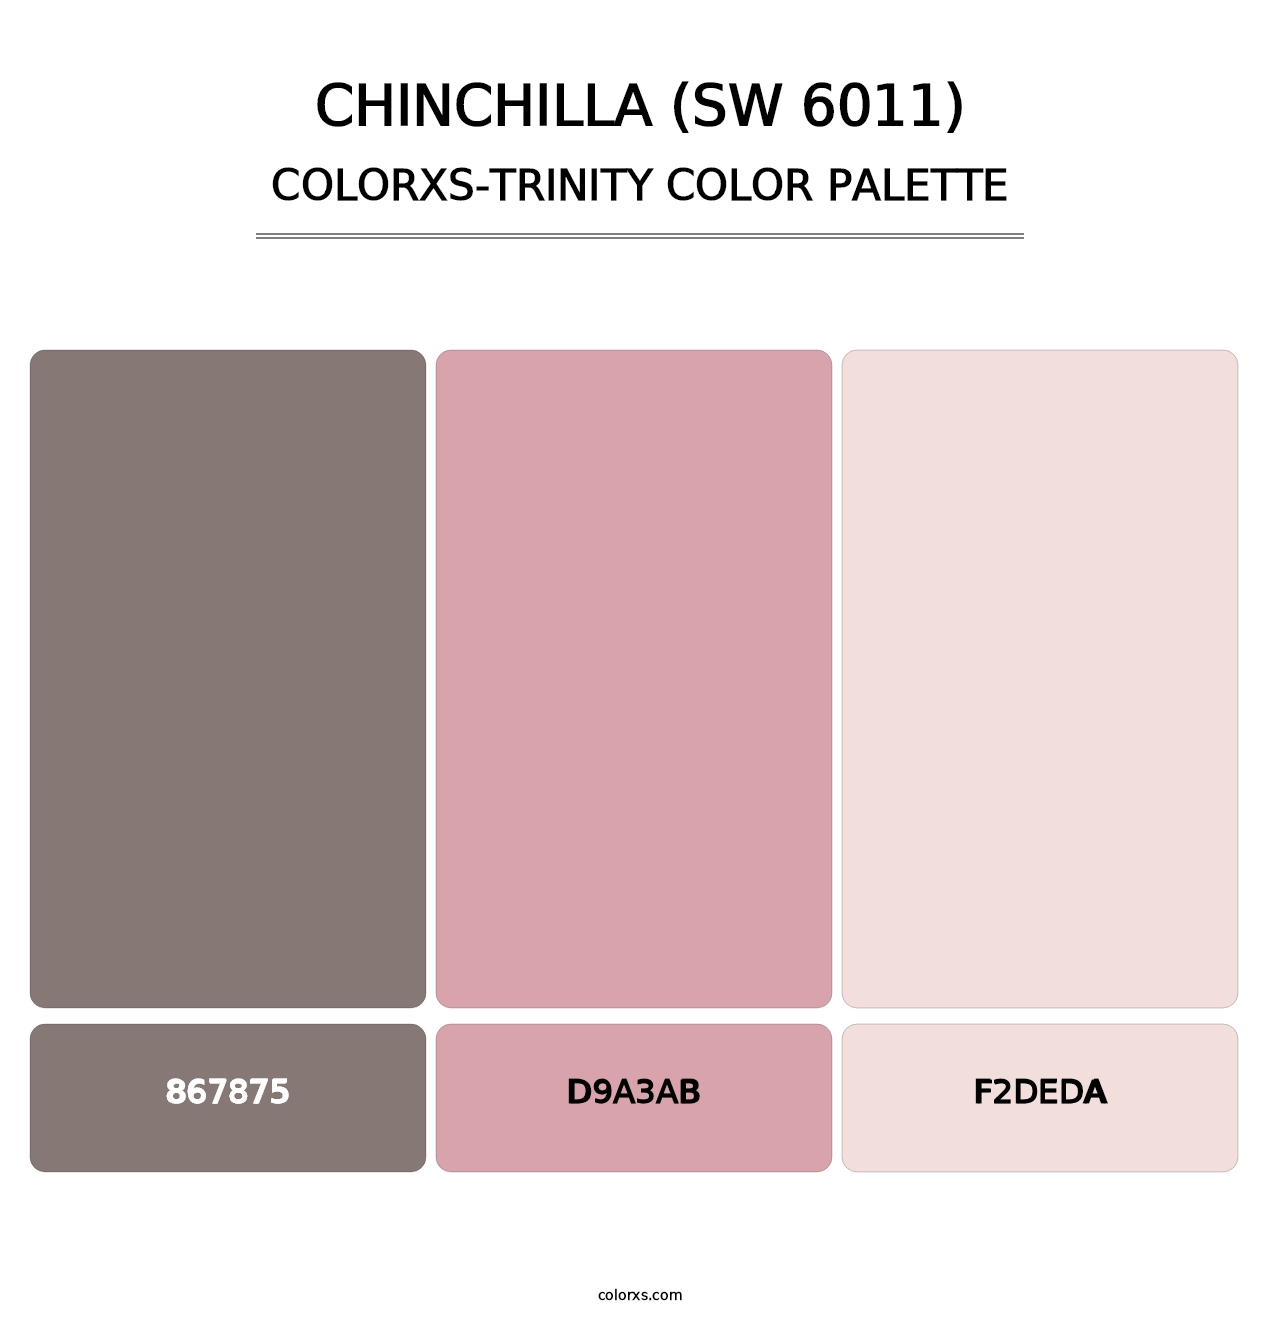 Chinchilla (SW 6011) - Colorxs Trinity Palette